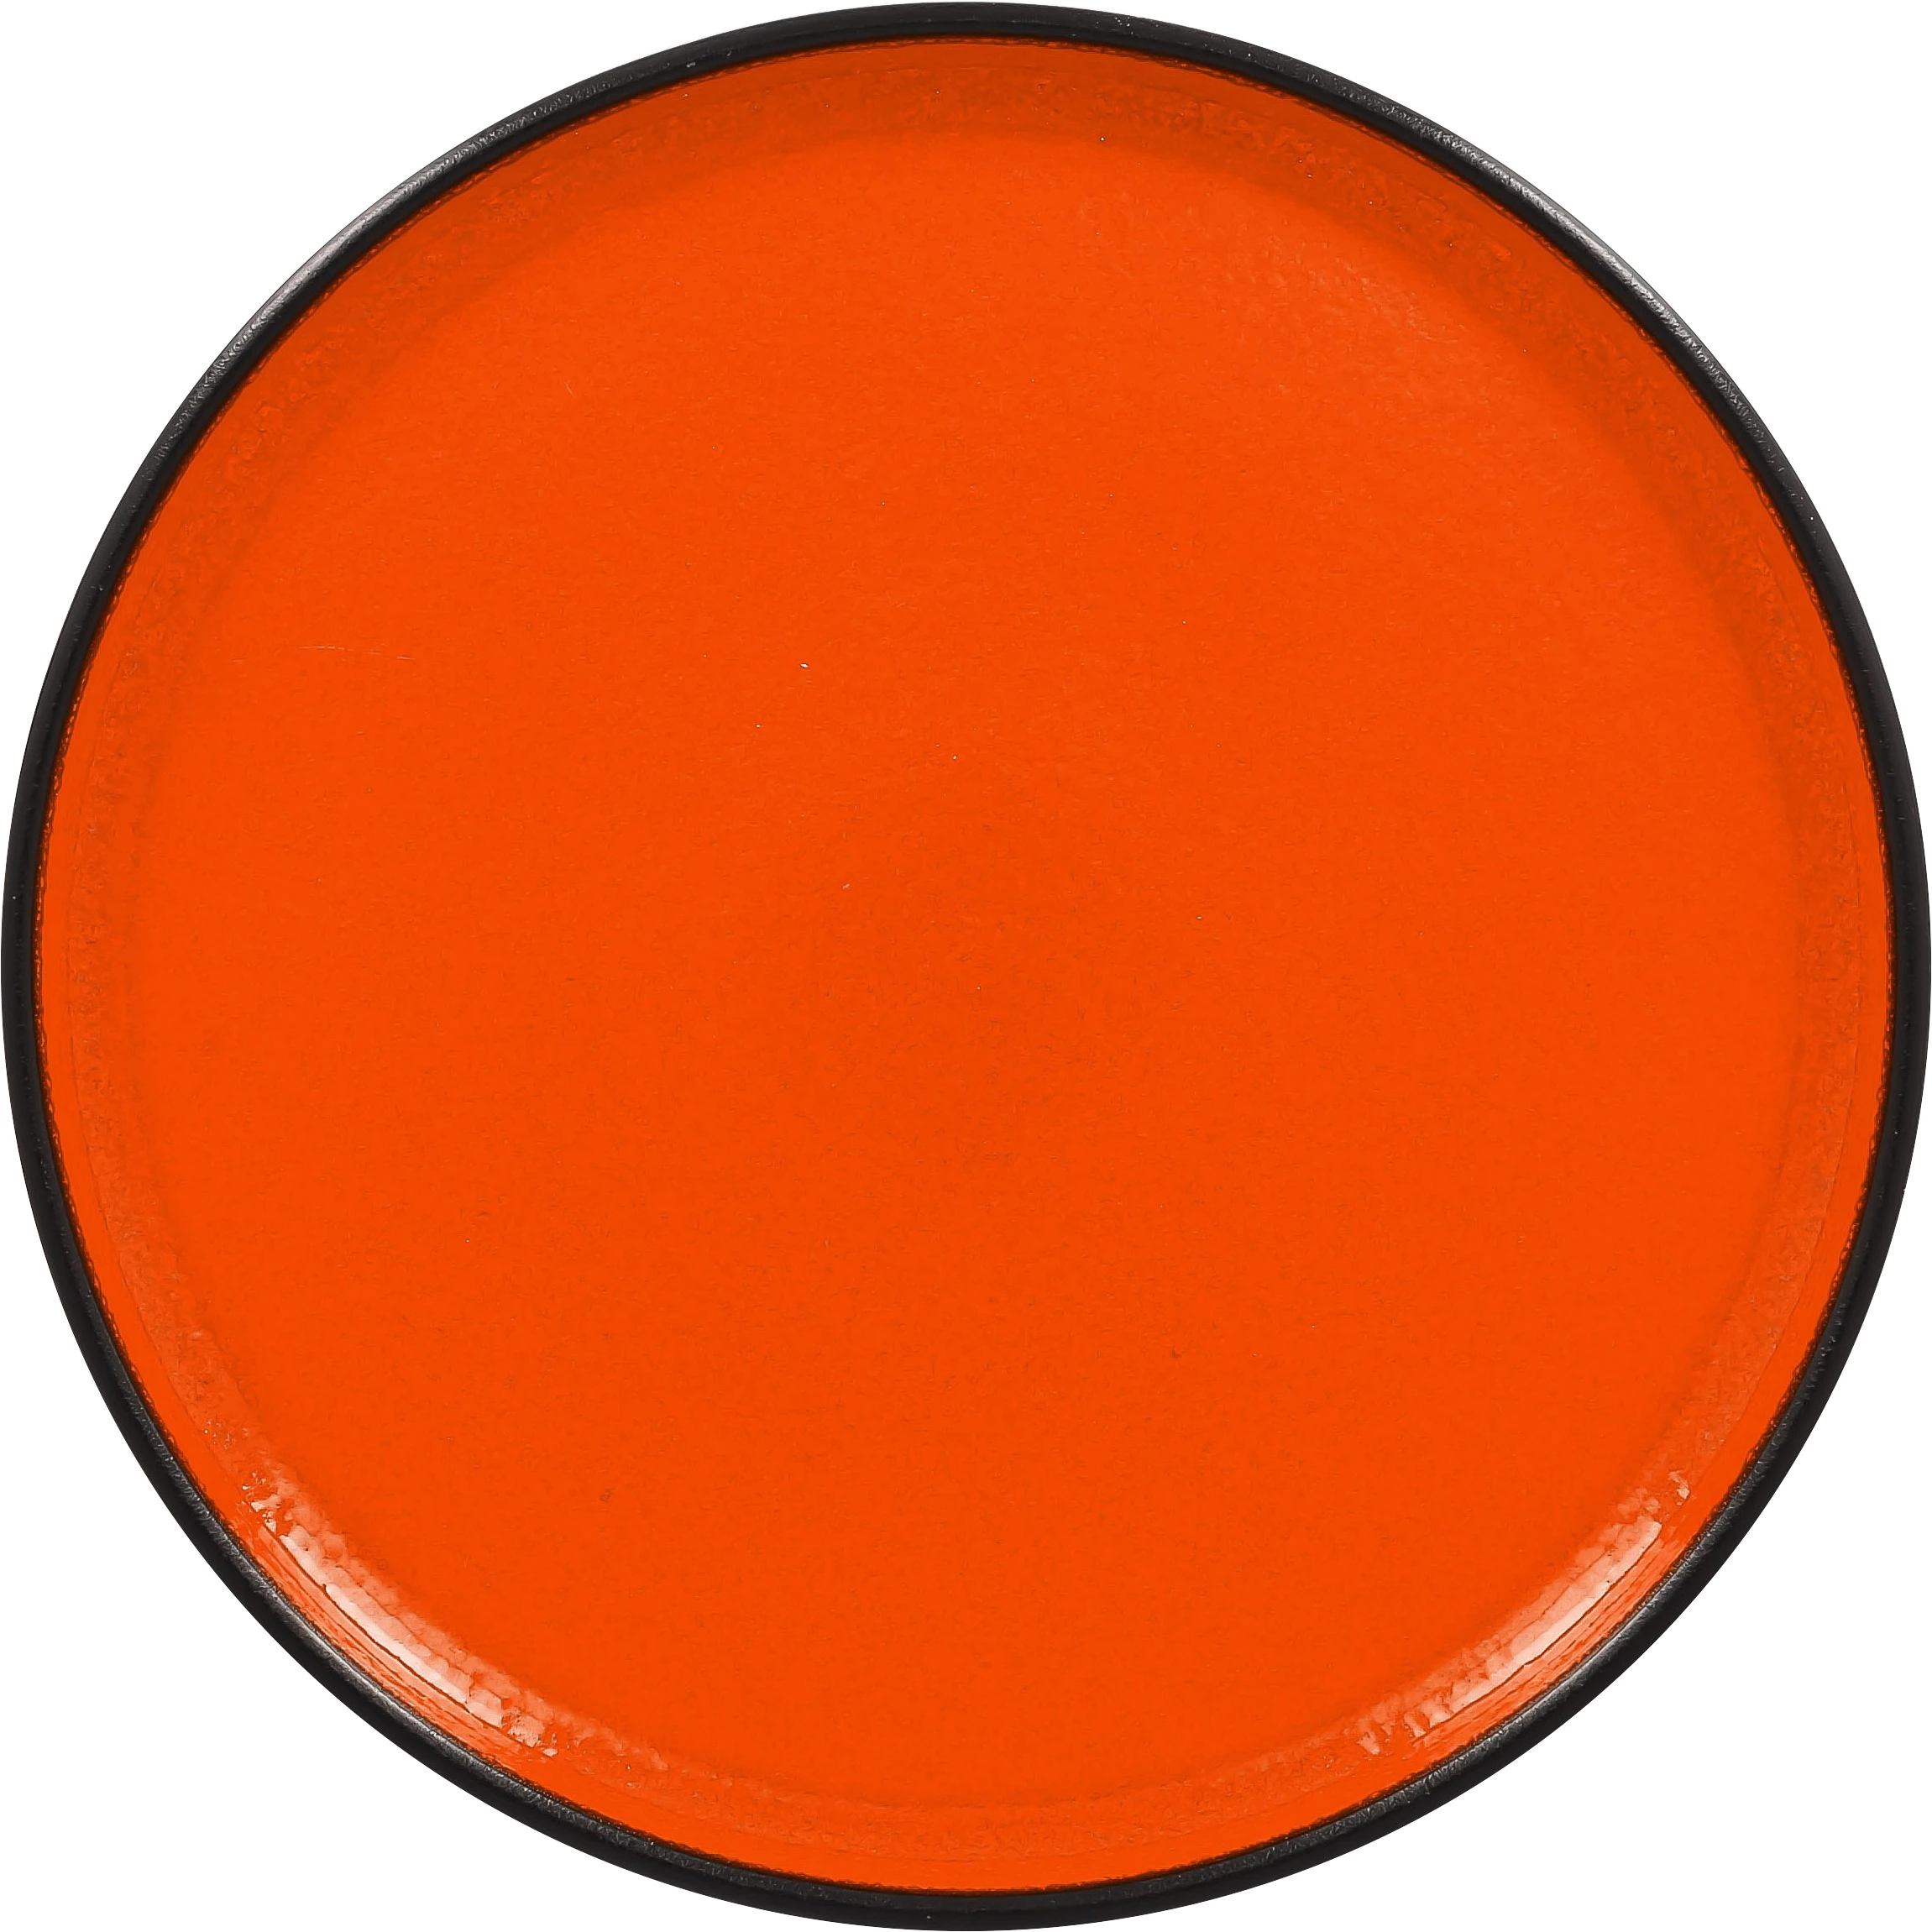 RAK Fire flad tallerken uden fane, orange, ø23 cm